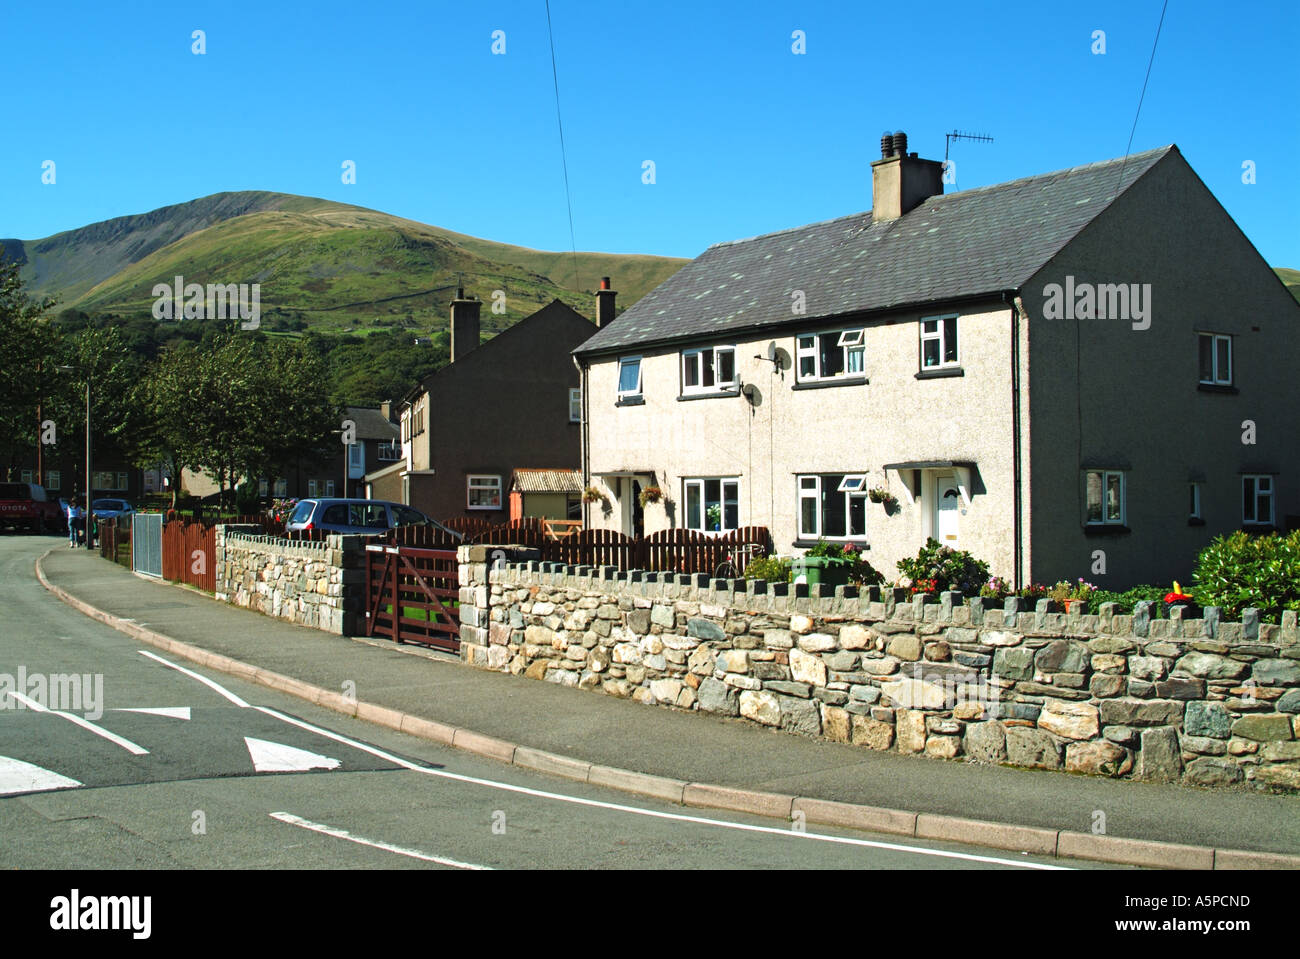 Llanberis semi détachée du parc immobilier avec la vitesse de la route dans le Nord du Pays de Galles Snowdonia Gwynedd UK Banque D'Images